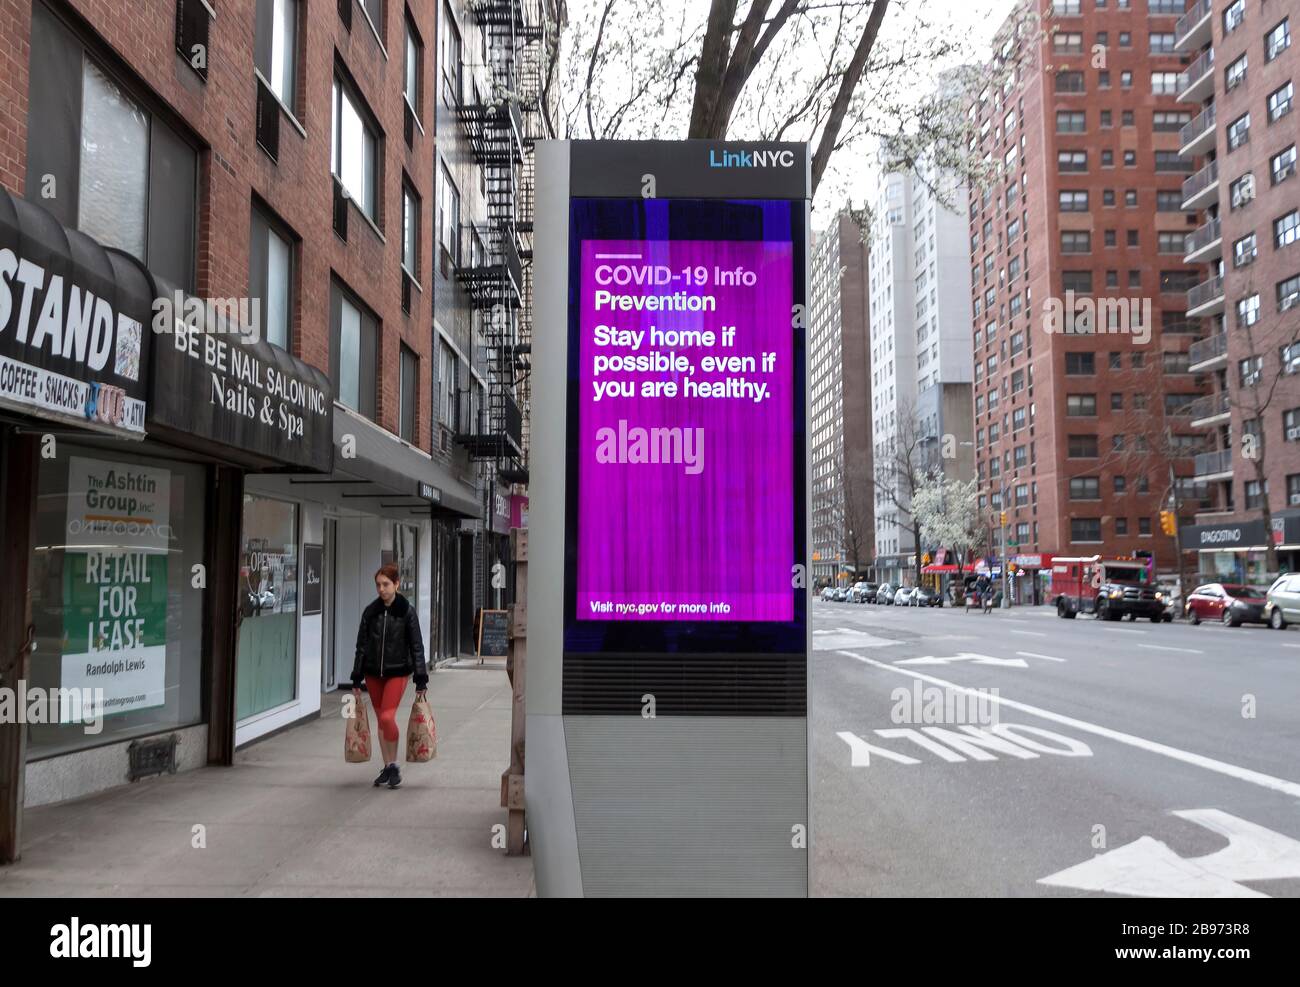 El kiosco digital de LinkNYC muestra mensajes de Covid-19 (coronavirus) y consejos sobre cuarentena a los neoyorquinos. Foto de stock